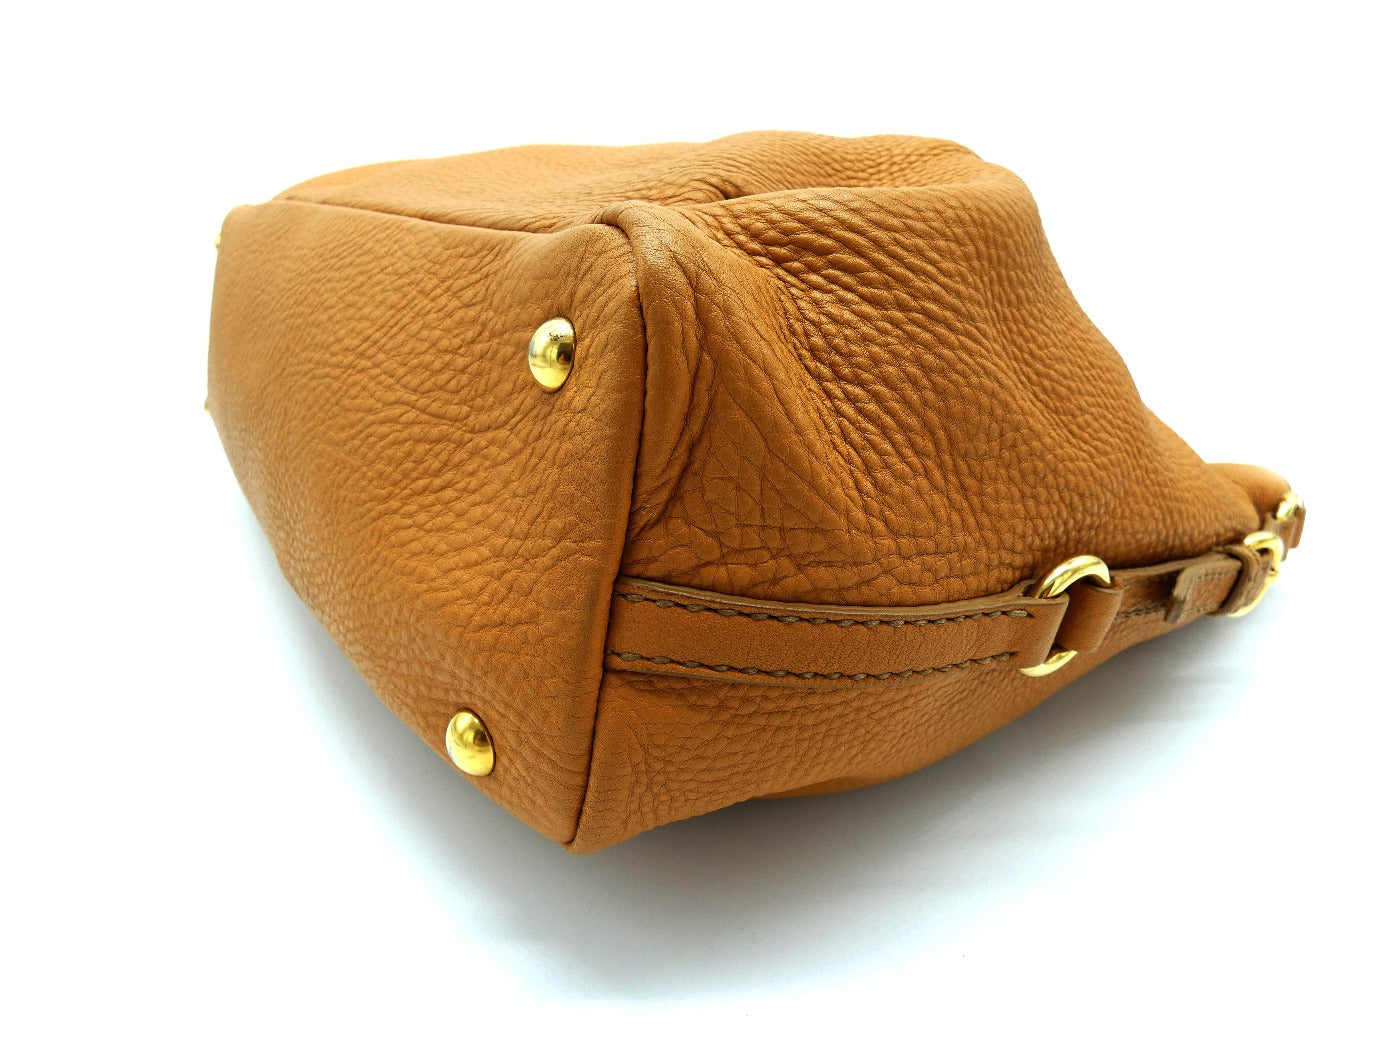 Miu Miu Tan/Yellow Madras Leather Shoulder Bag